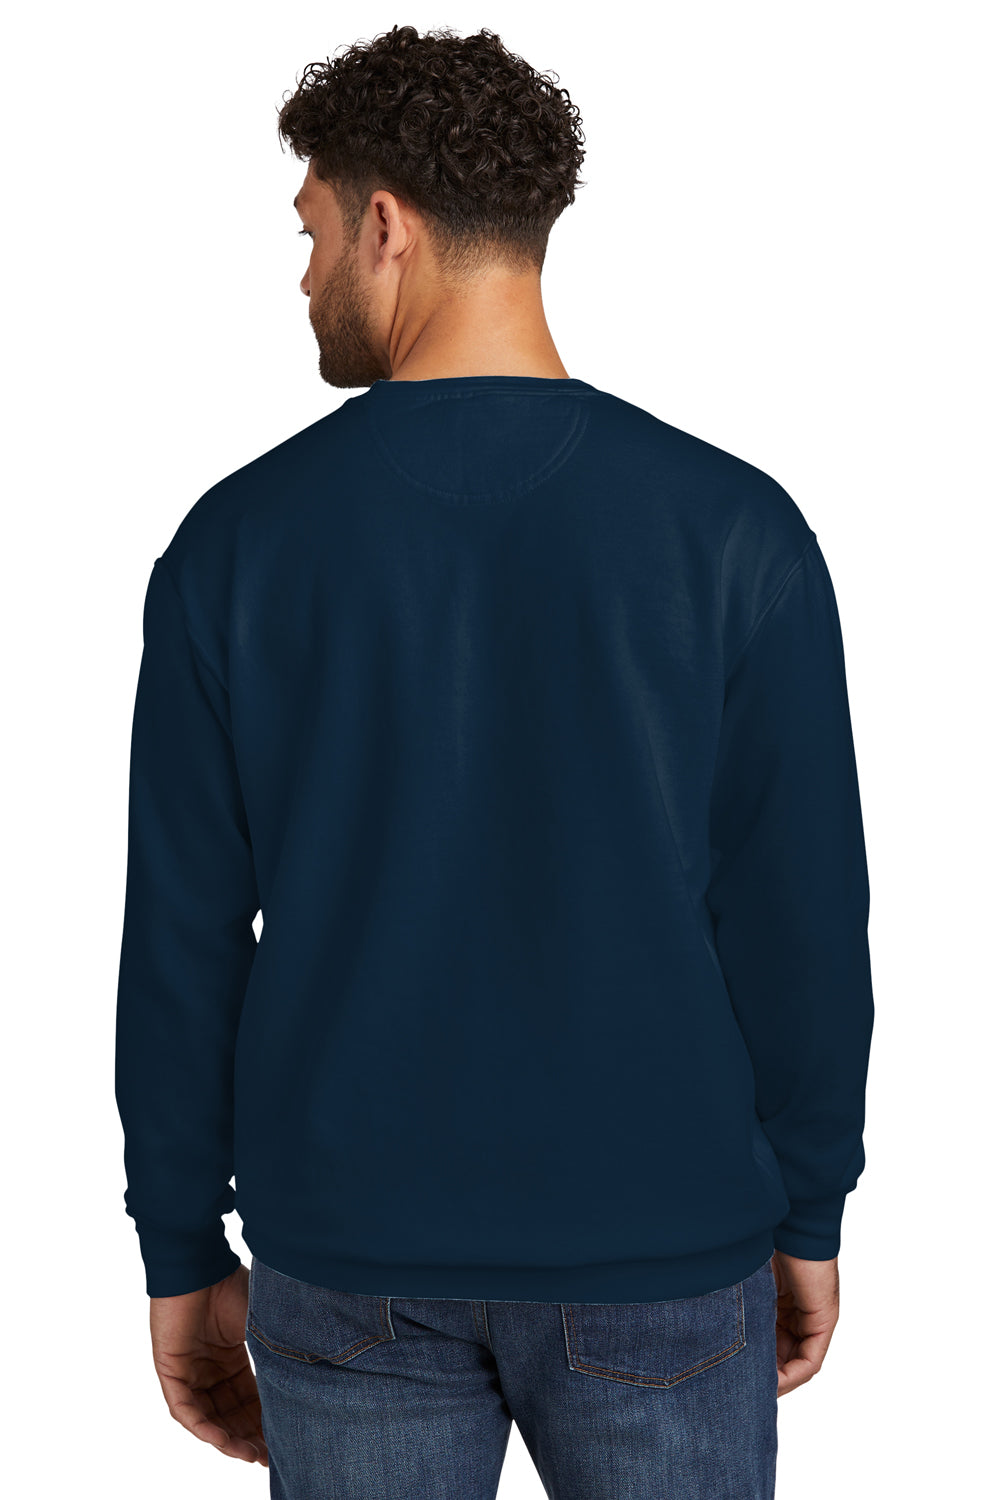 Comfort Colors 1566 Mens Crewneck Sweatshirt True Navy Blue Back